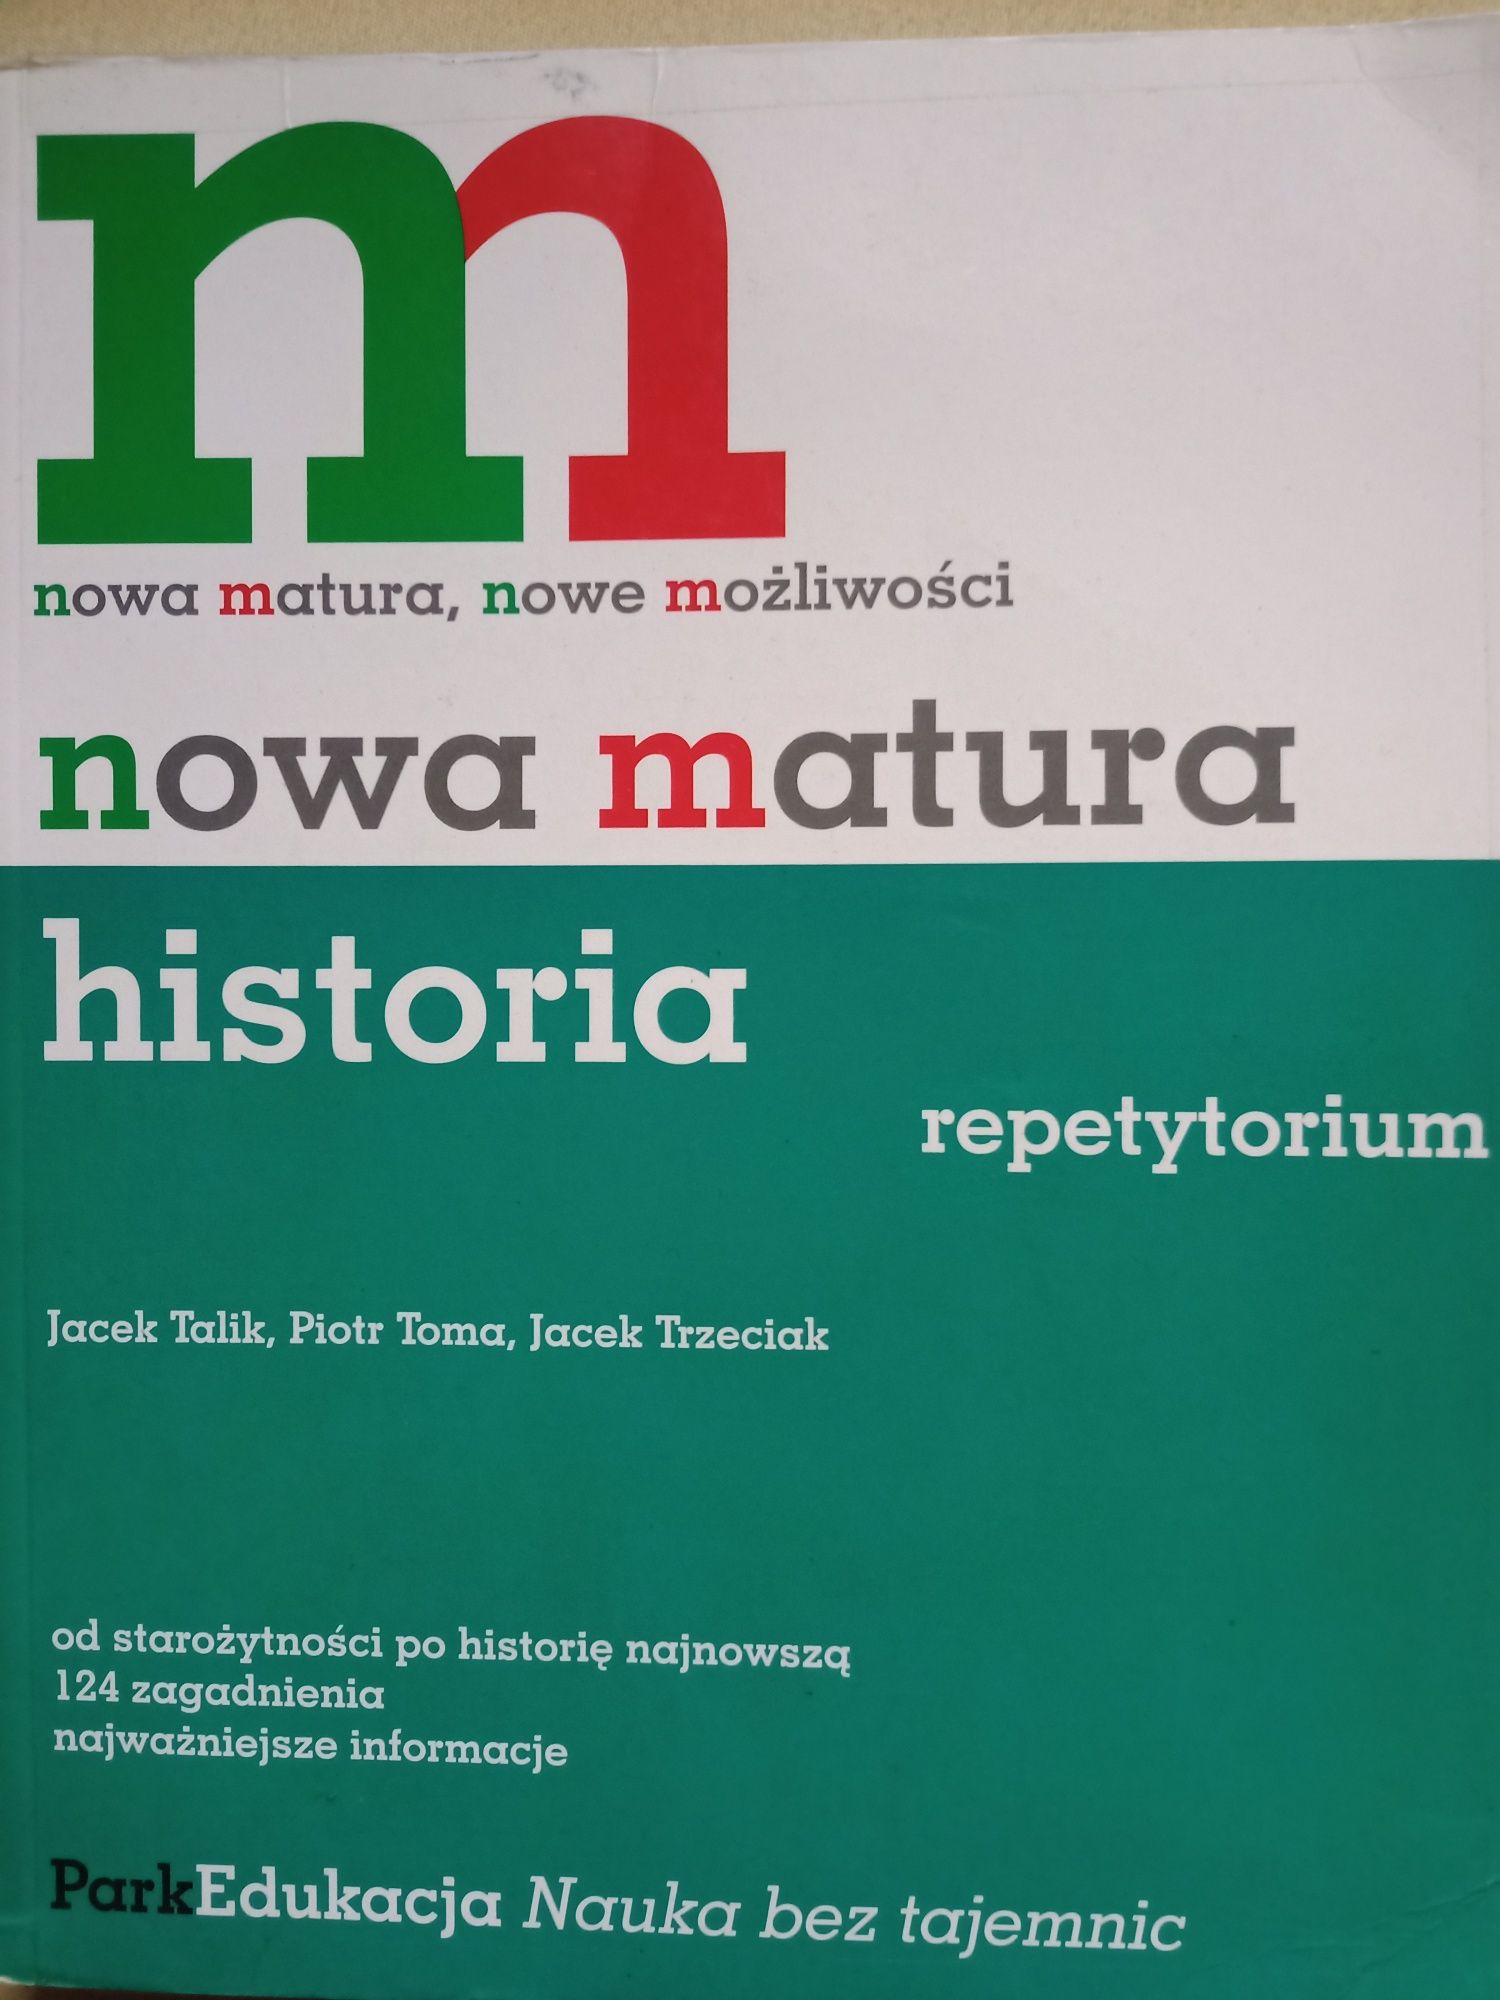 Nowa Matura – historia - repetytorium